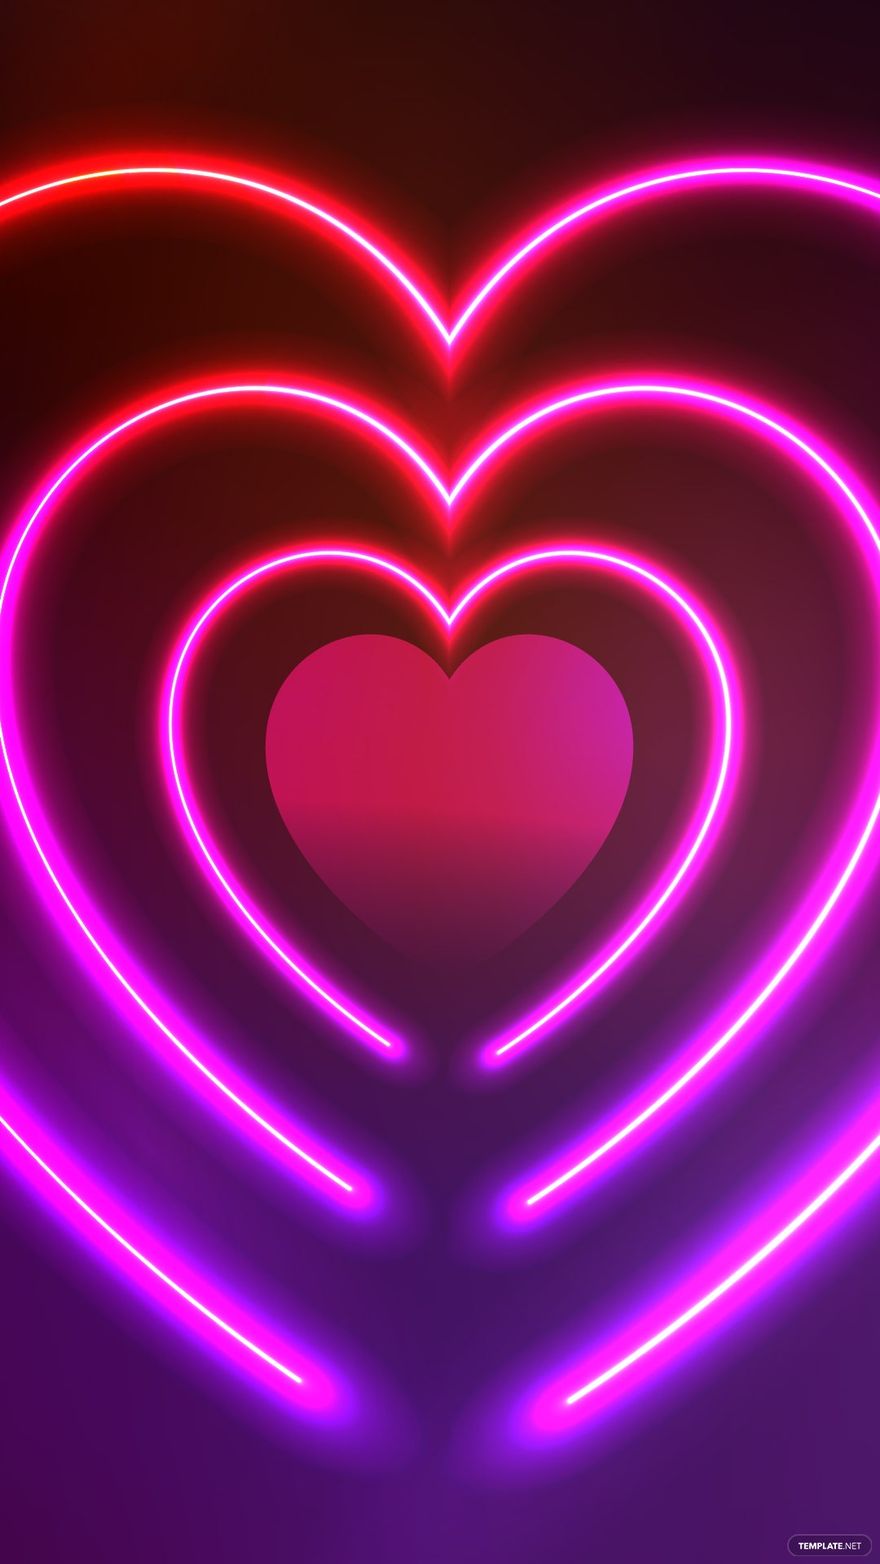 Neon Heart Background in Illustrator, EPS, SVG, JPG